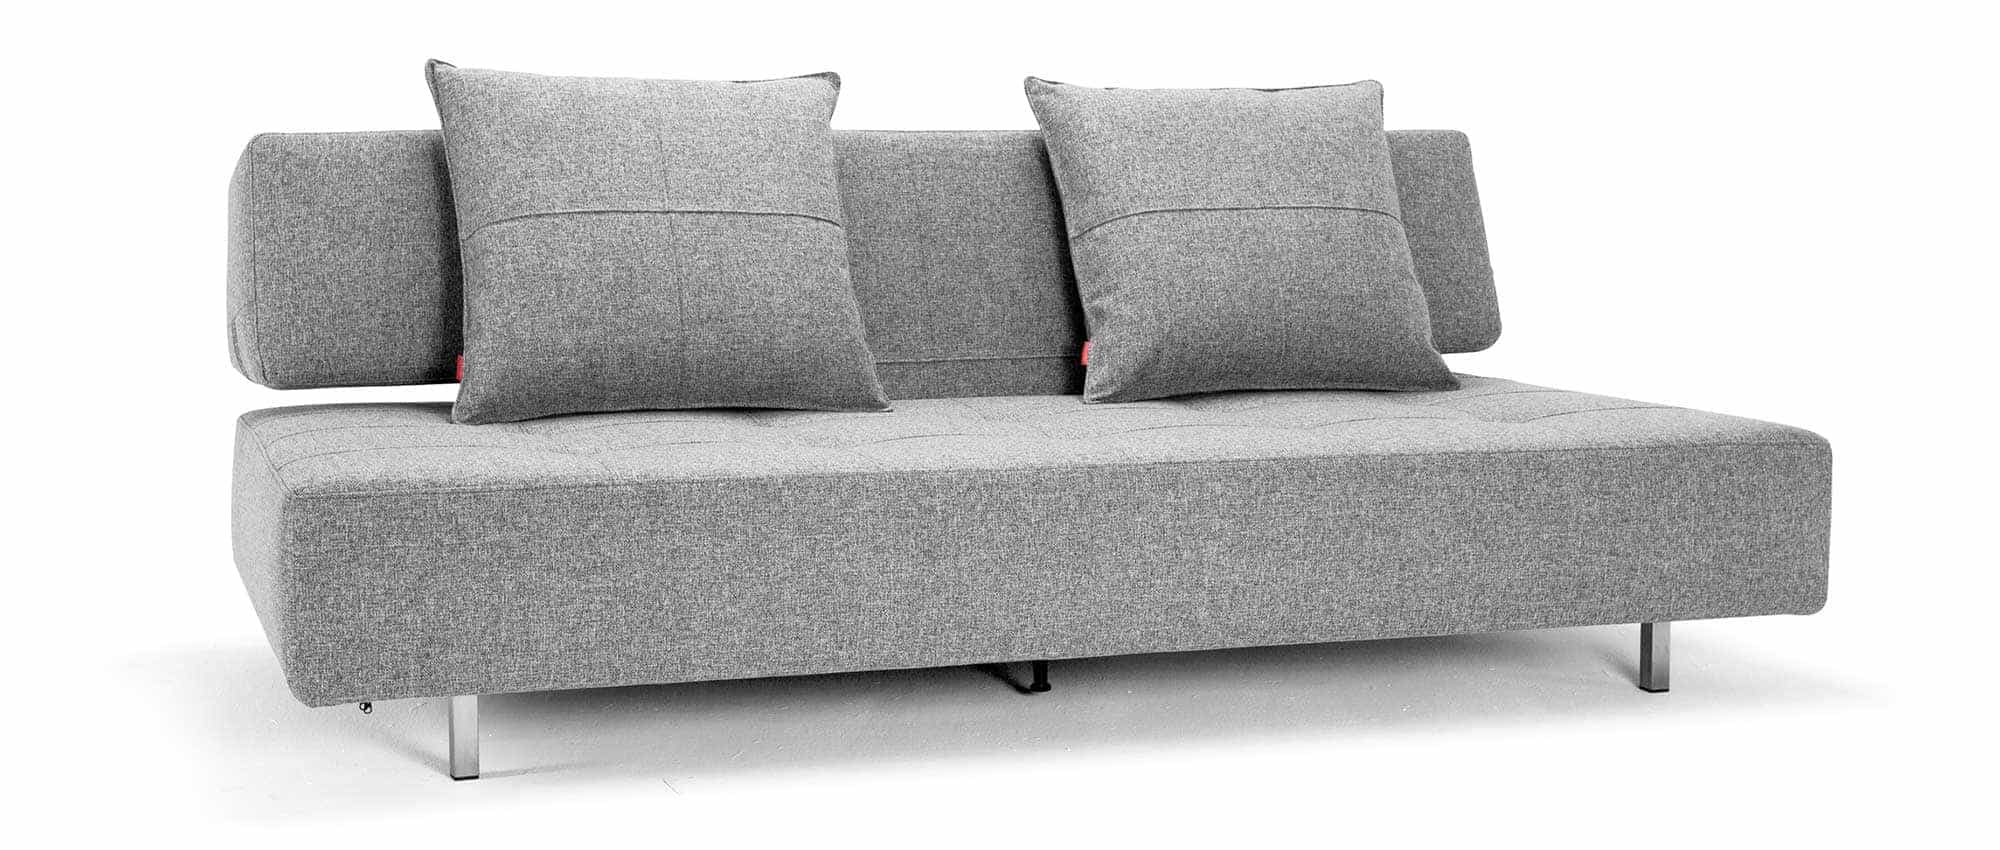 graues Lounge Sofa von Innovation, Schlafsofa LONG HORN EXCESS mit Rollen und Metallfüßen - 140x200 cm